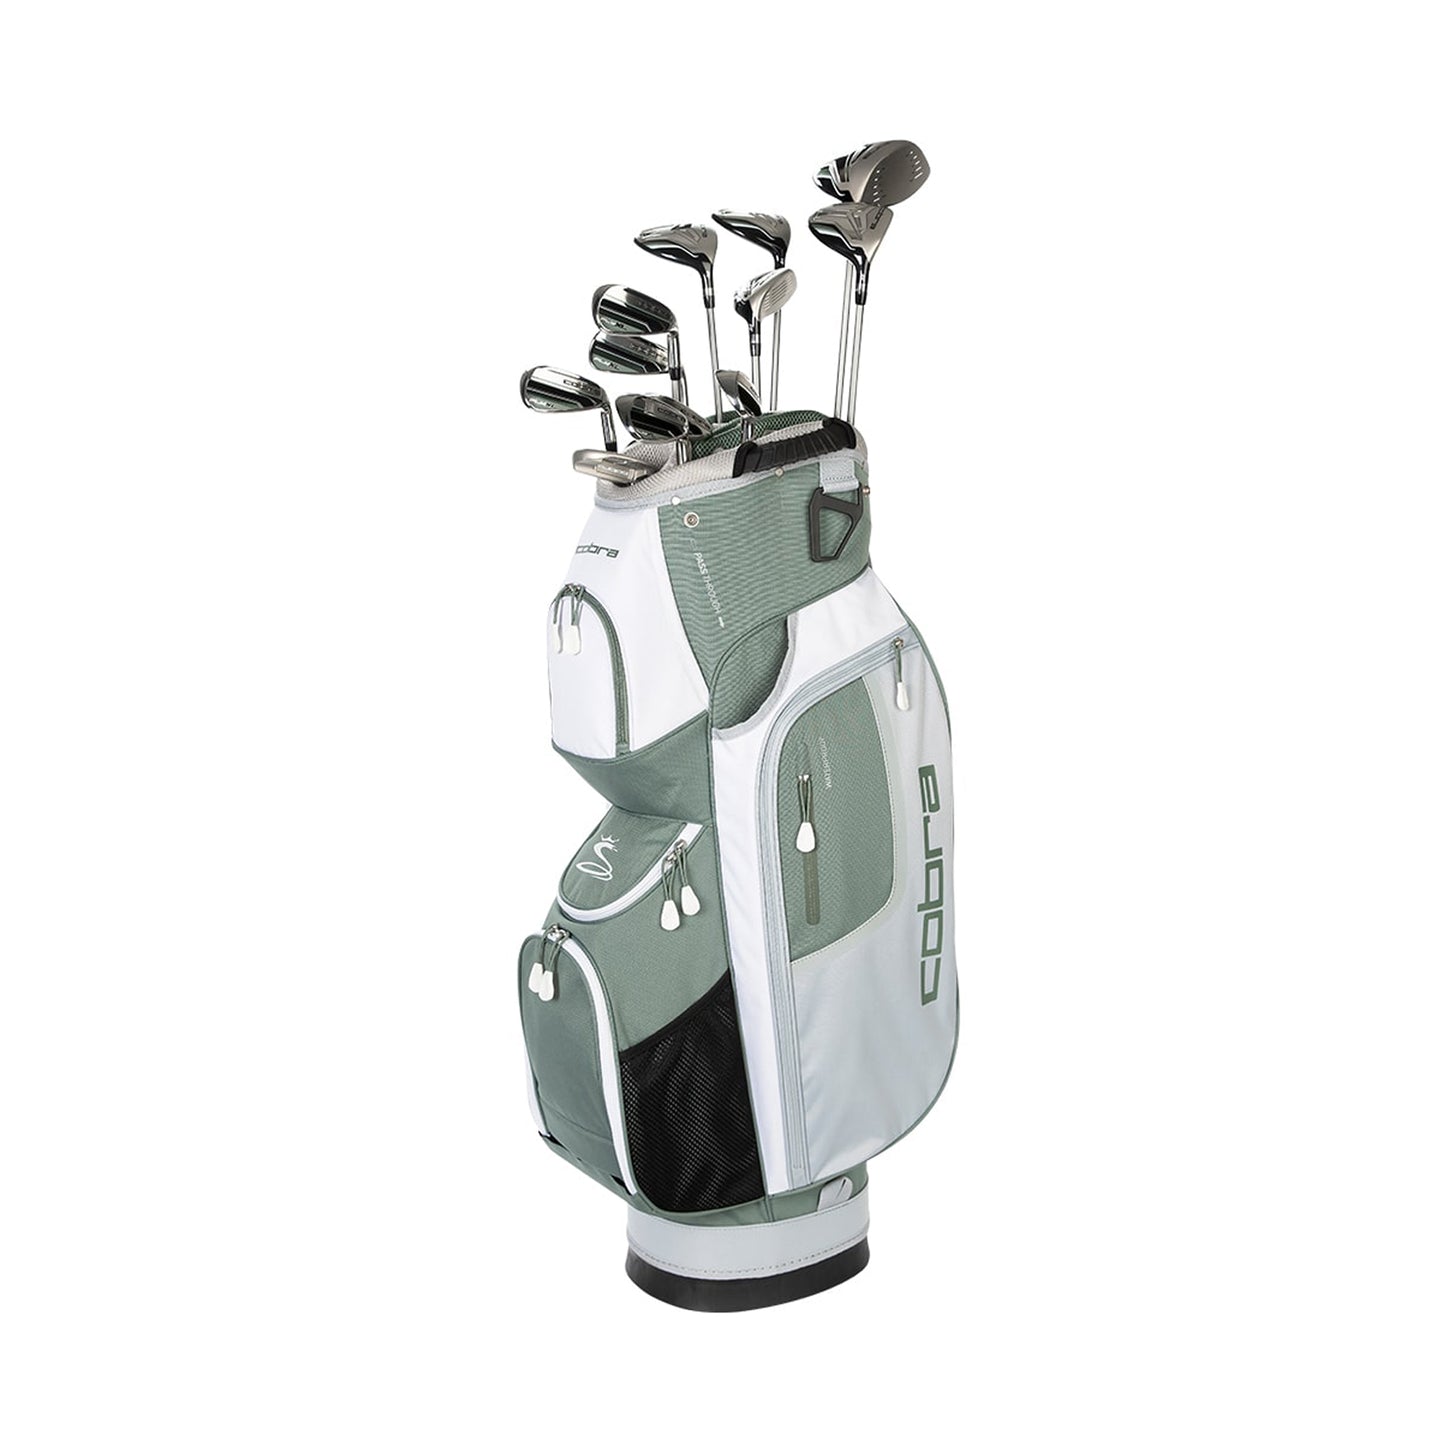 Women's Fly-XL Cart Bag Complete Set – COBRA Golf